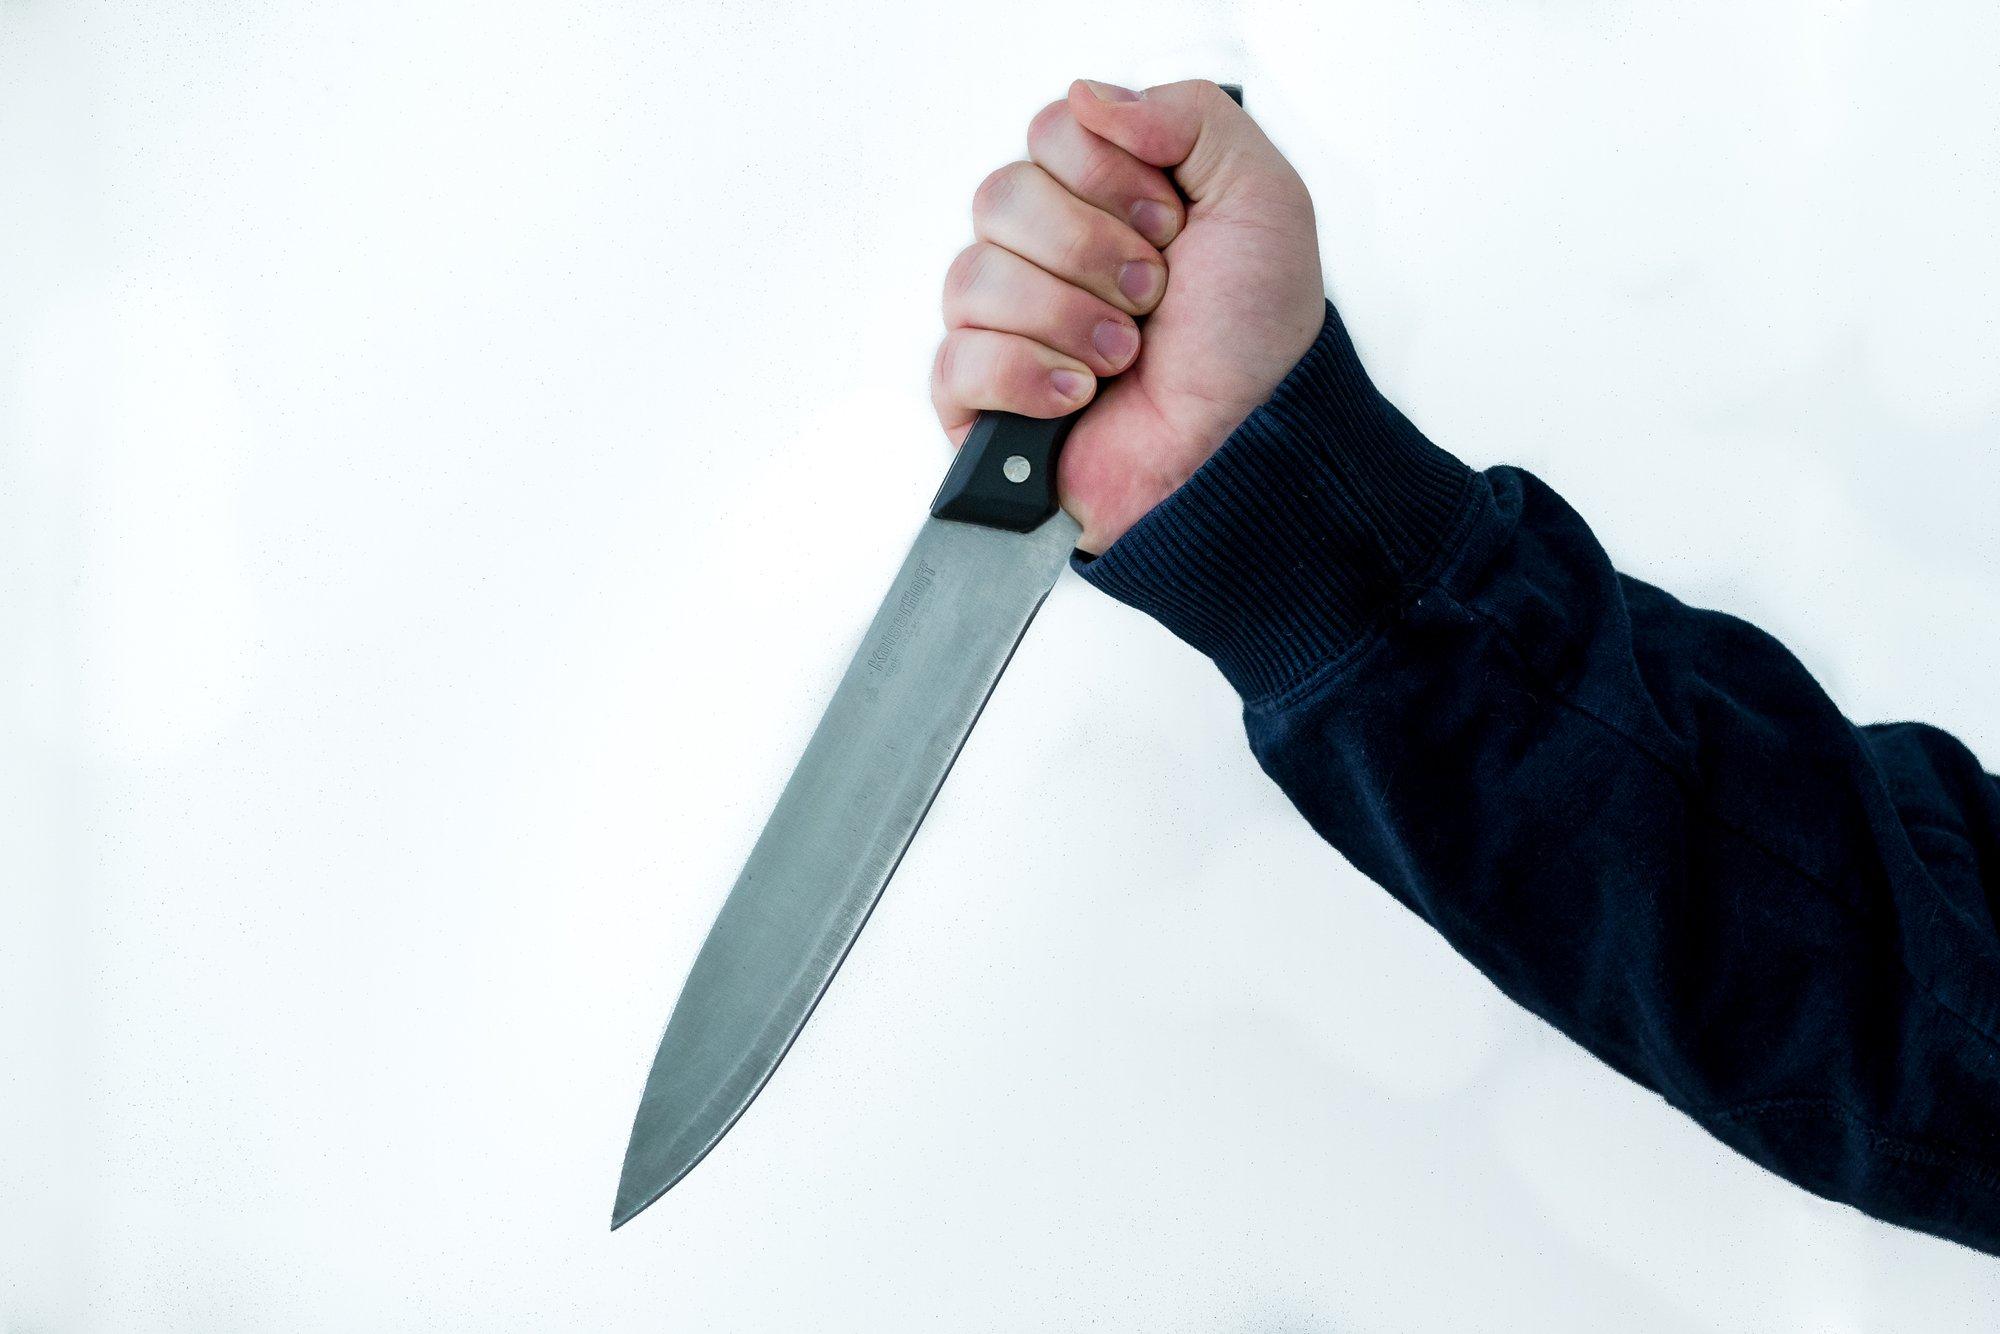 В Нарве молодой мужчина ударил человека и угрожал ему ножом в заведении питания на Петровской площади, его задержали, когда он пытался скрыться на BMW